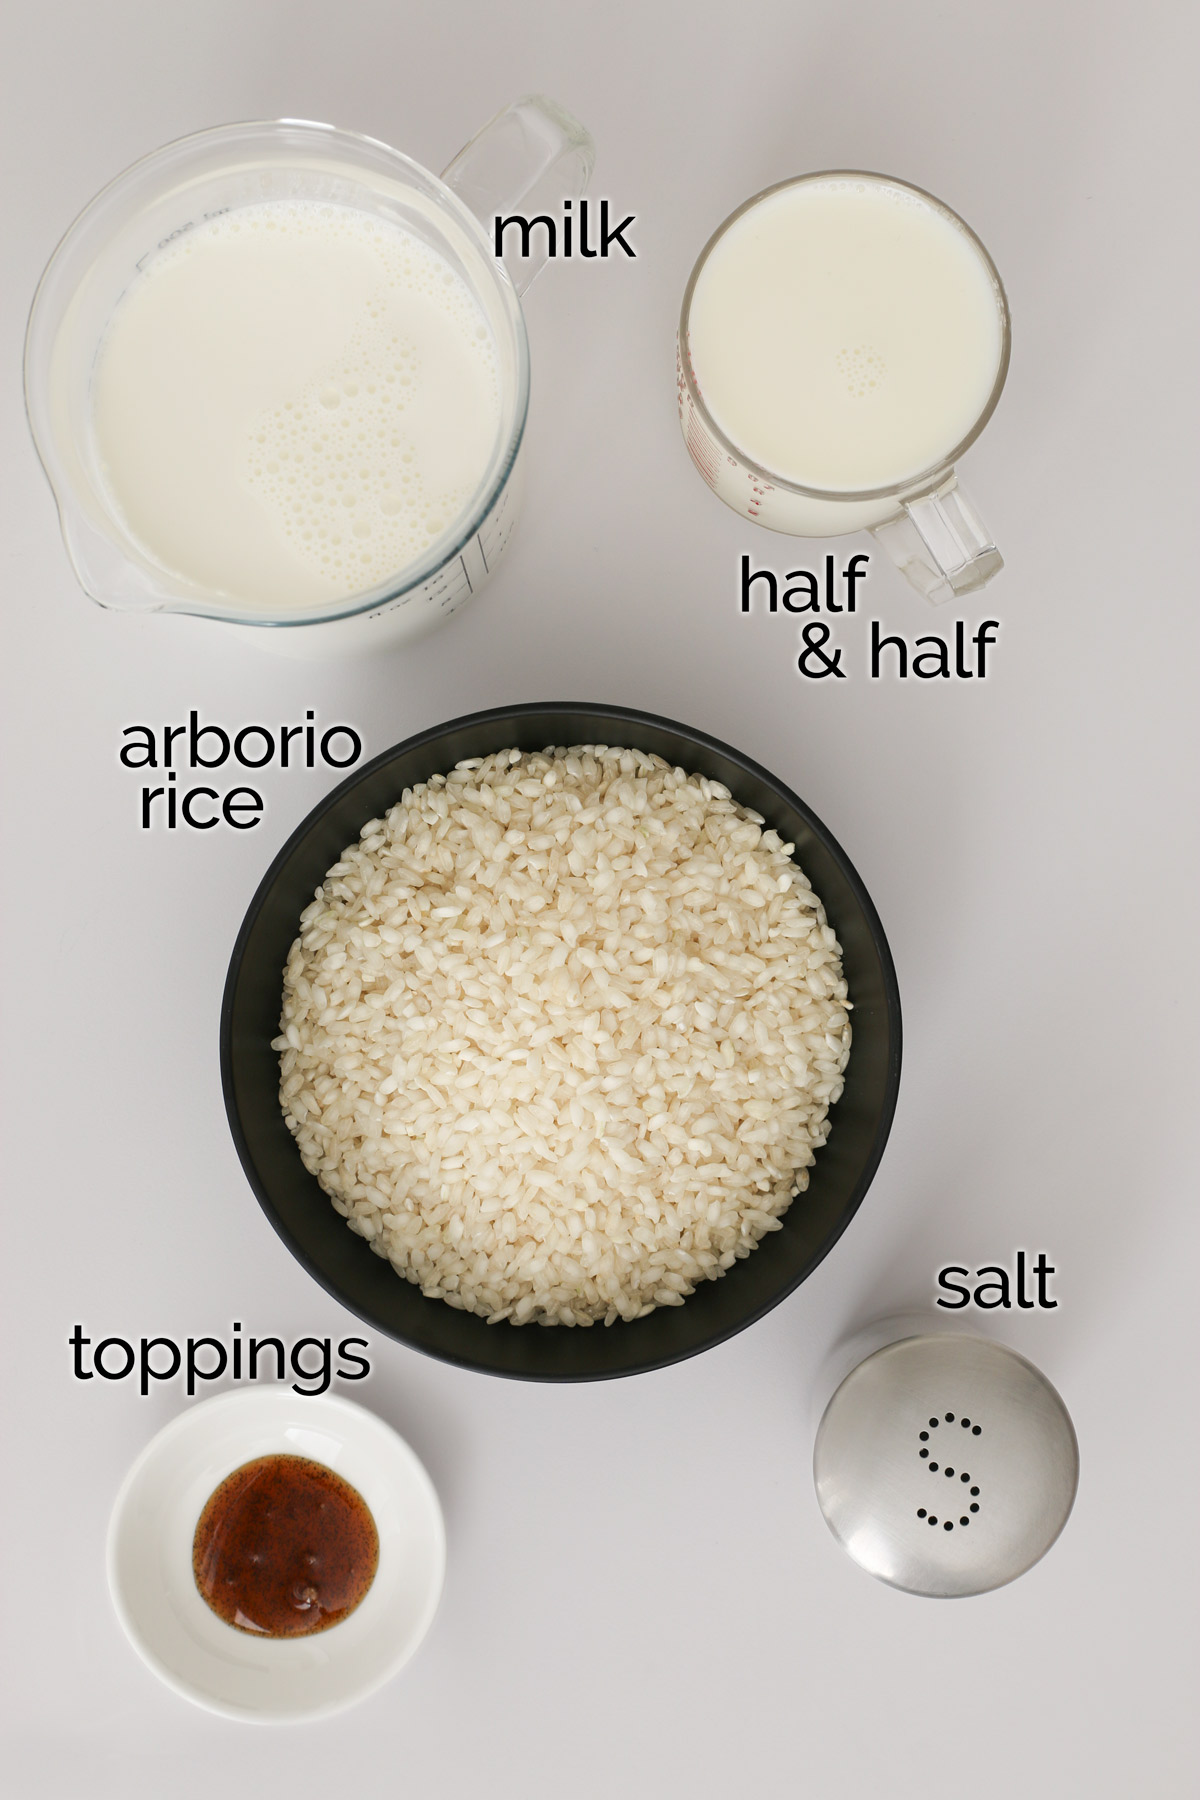 składniki na kleisty ryż na białym blacie.